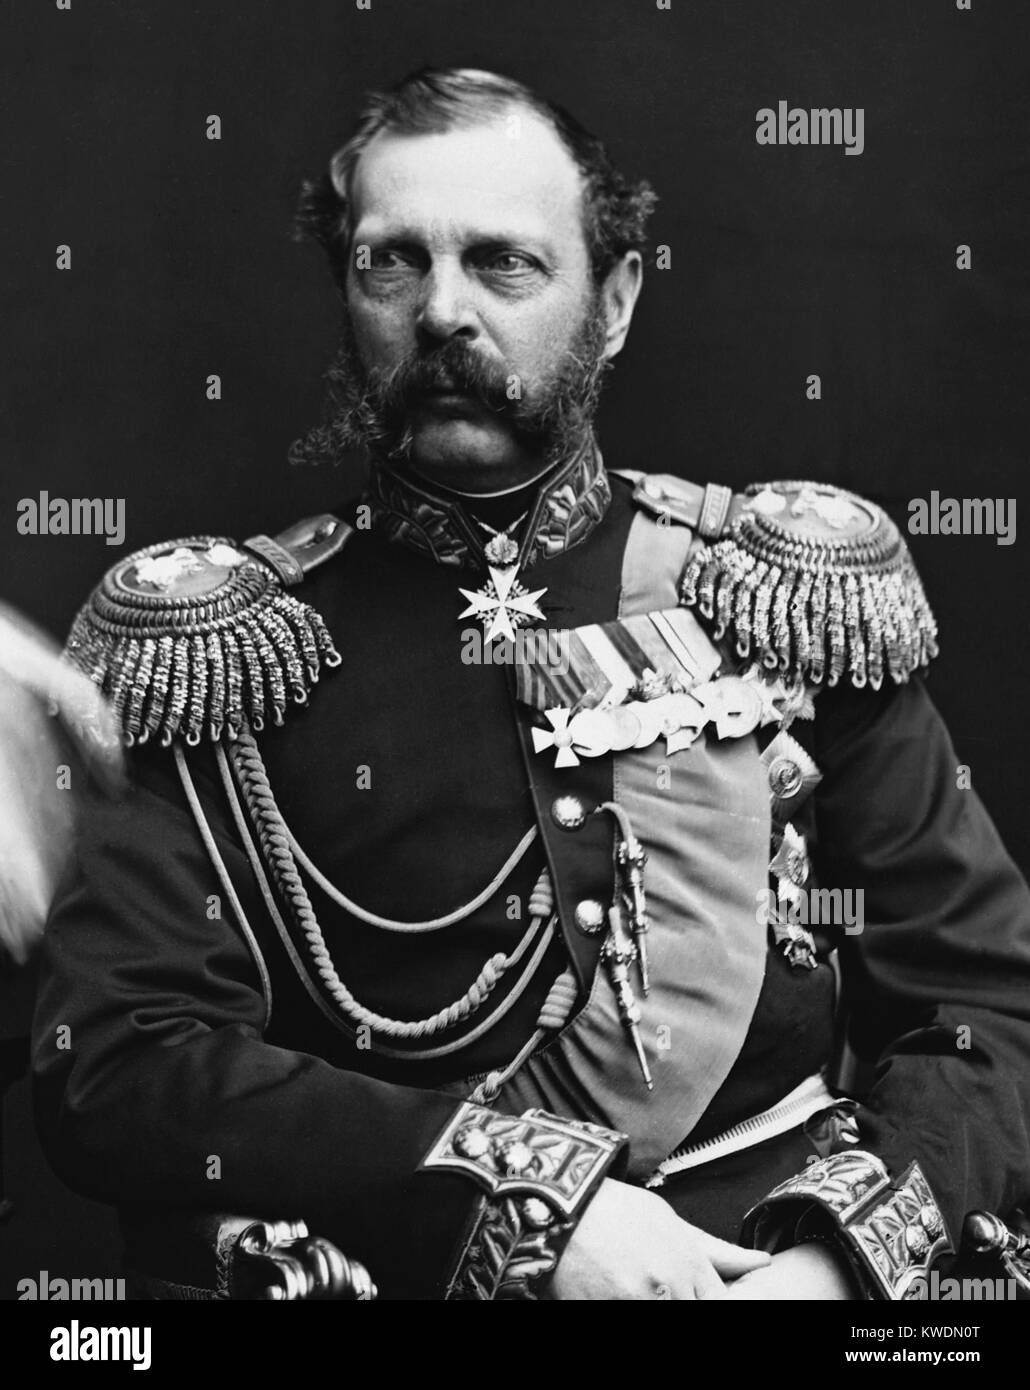 Alexandre II de Russie, (29 avril 1818 - 13 mars 1881) Empereur de Russie à partir du 2 mars 1855 jusqu'à son assassinat le 13 mars 1881 Banque D'Images